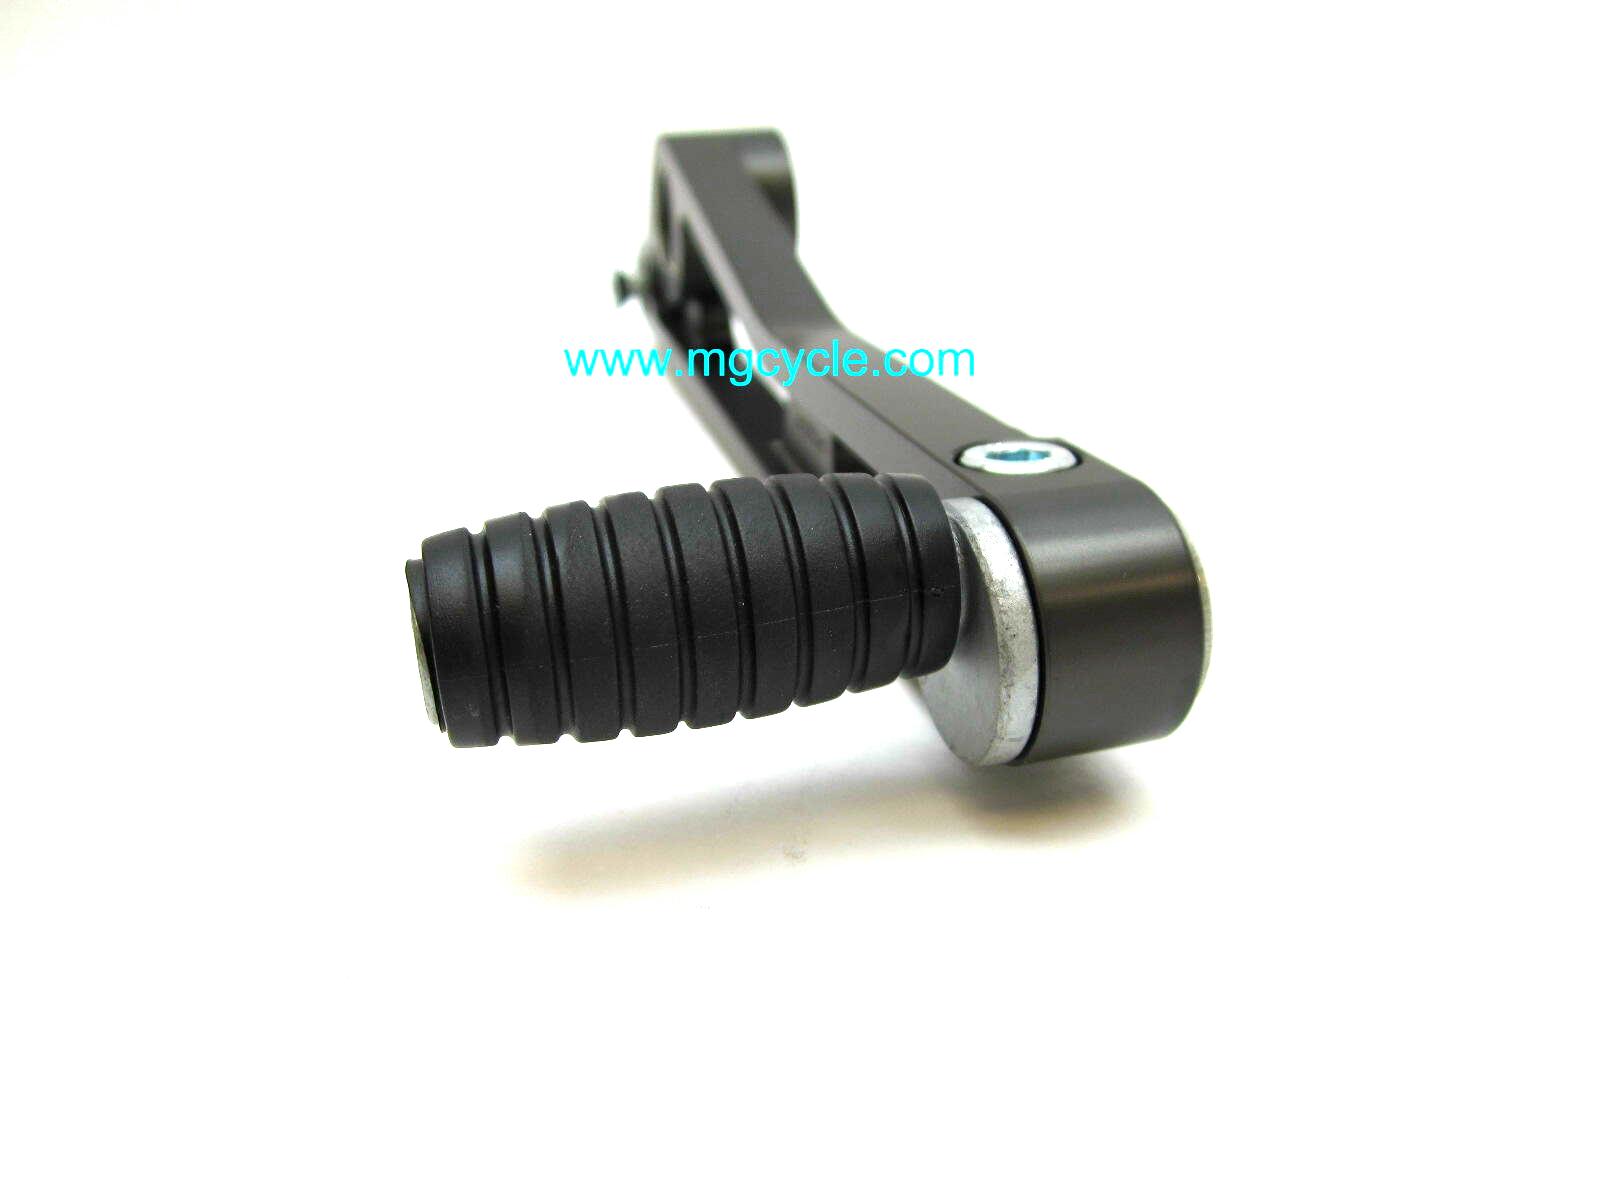 Brake pedal w/adjustable toe, black, 1100 spine frames